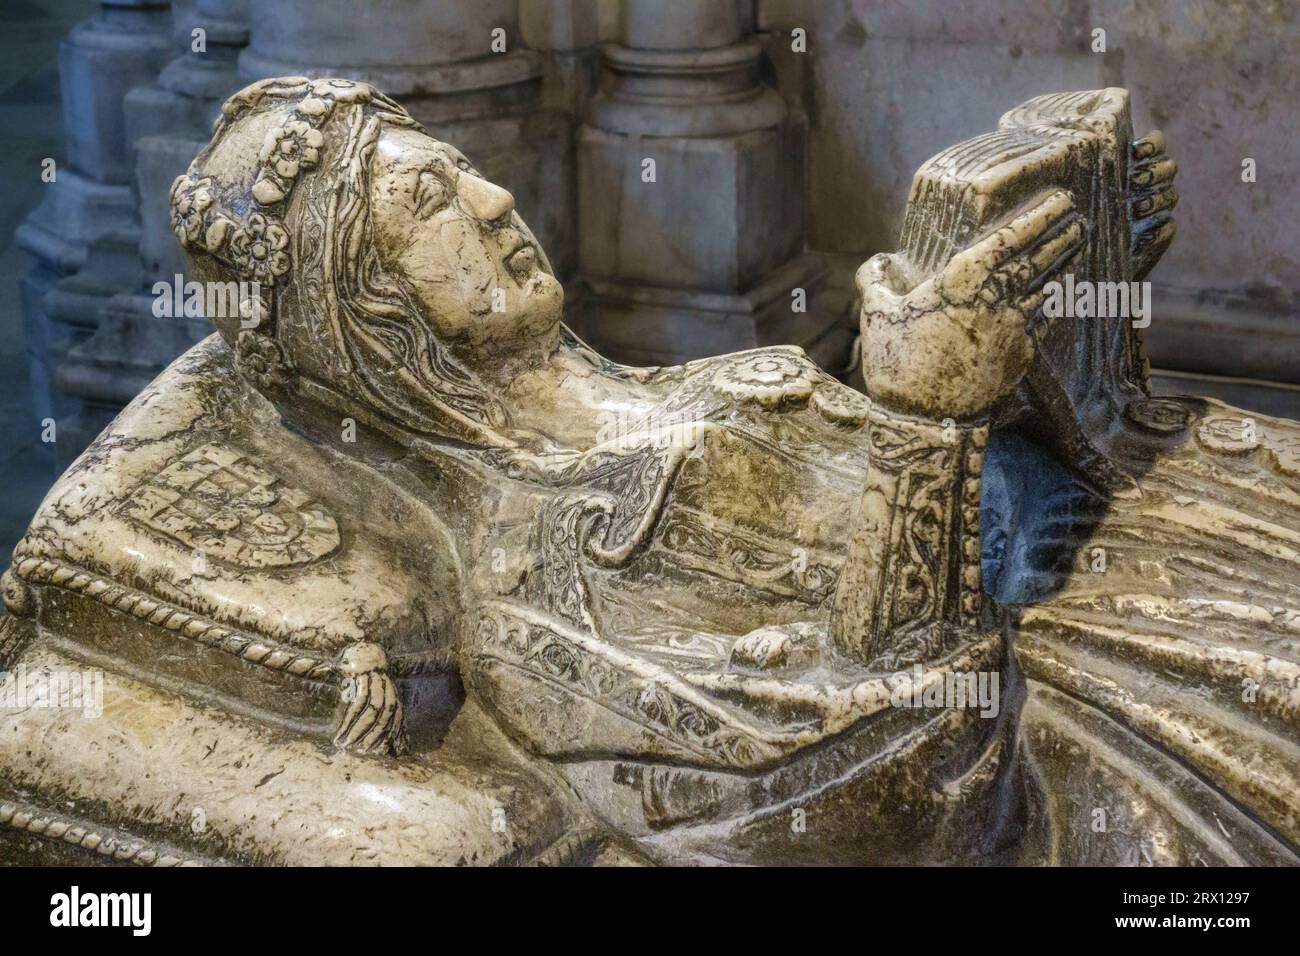 Le tombeau de 14c de la noble Maria de Vilalobos avec son effigie sculptée lisant un livre d'heures (Cathédrale de Lisbonne, Portugal) Banque D'Images